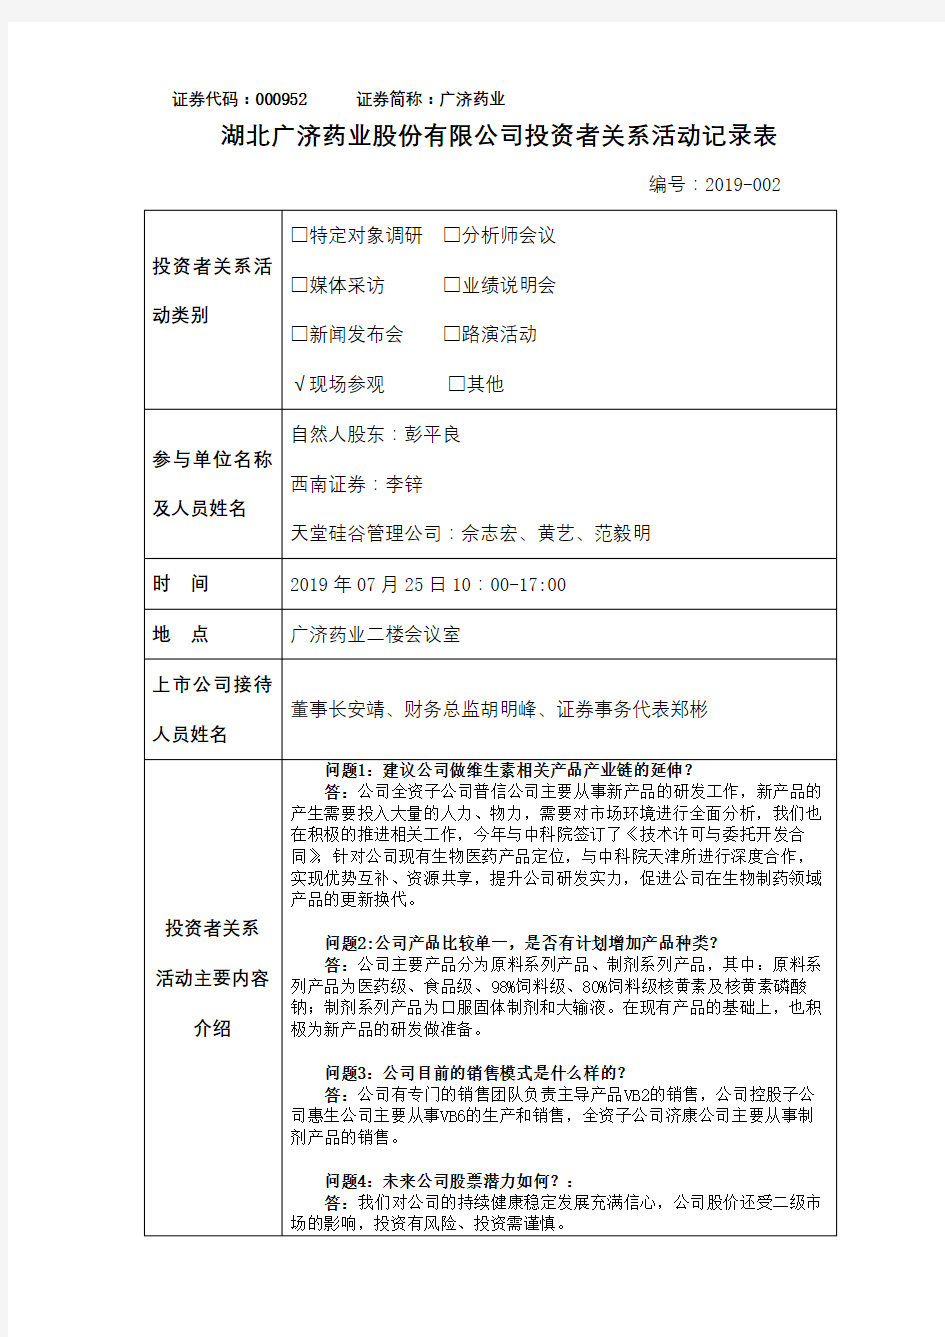 湖北广济药业股份有限公司投资者关系活动记录表【模板】